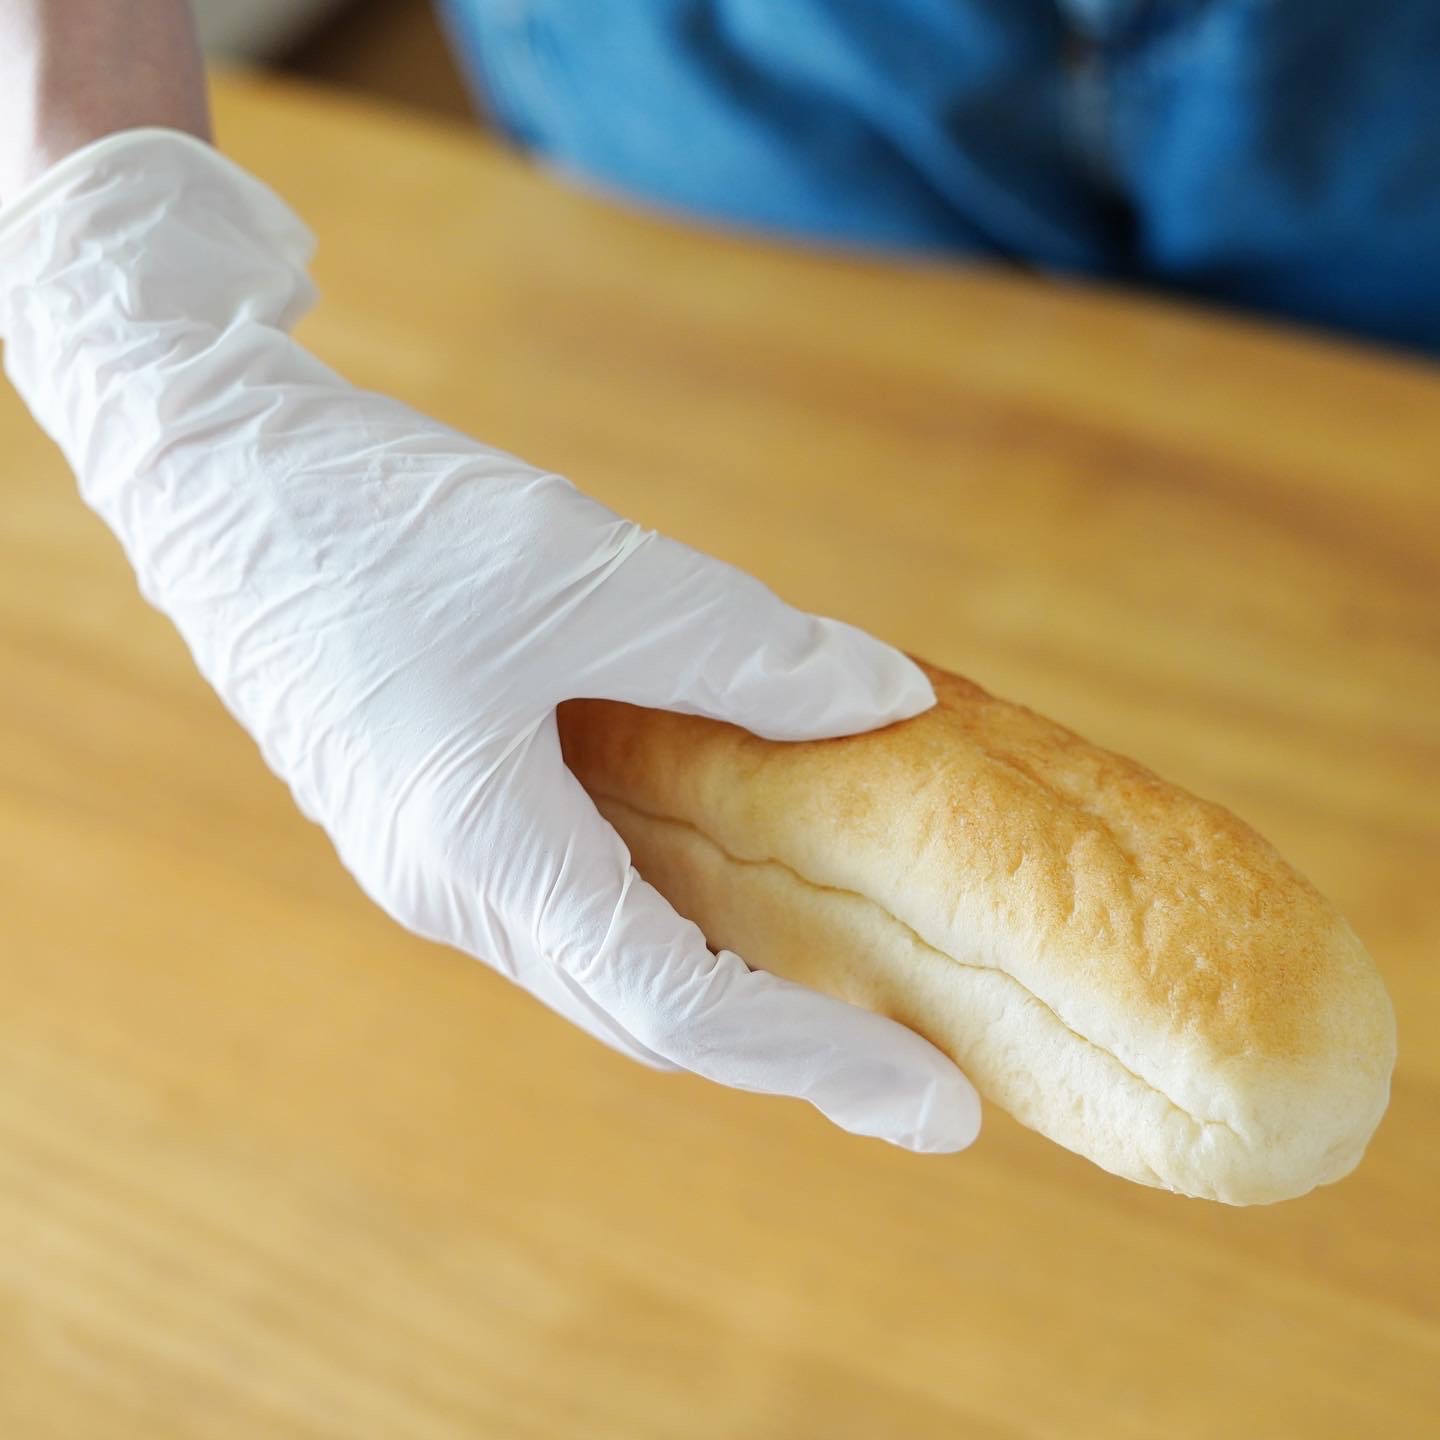 ニトリル手袋Sサイズ白（粉なし）を手にはめてパンを持っています